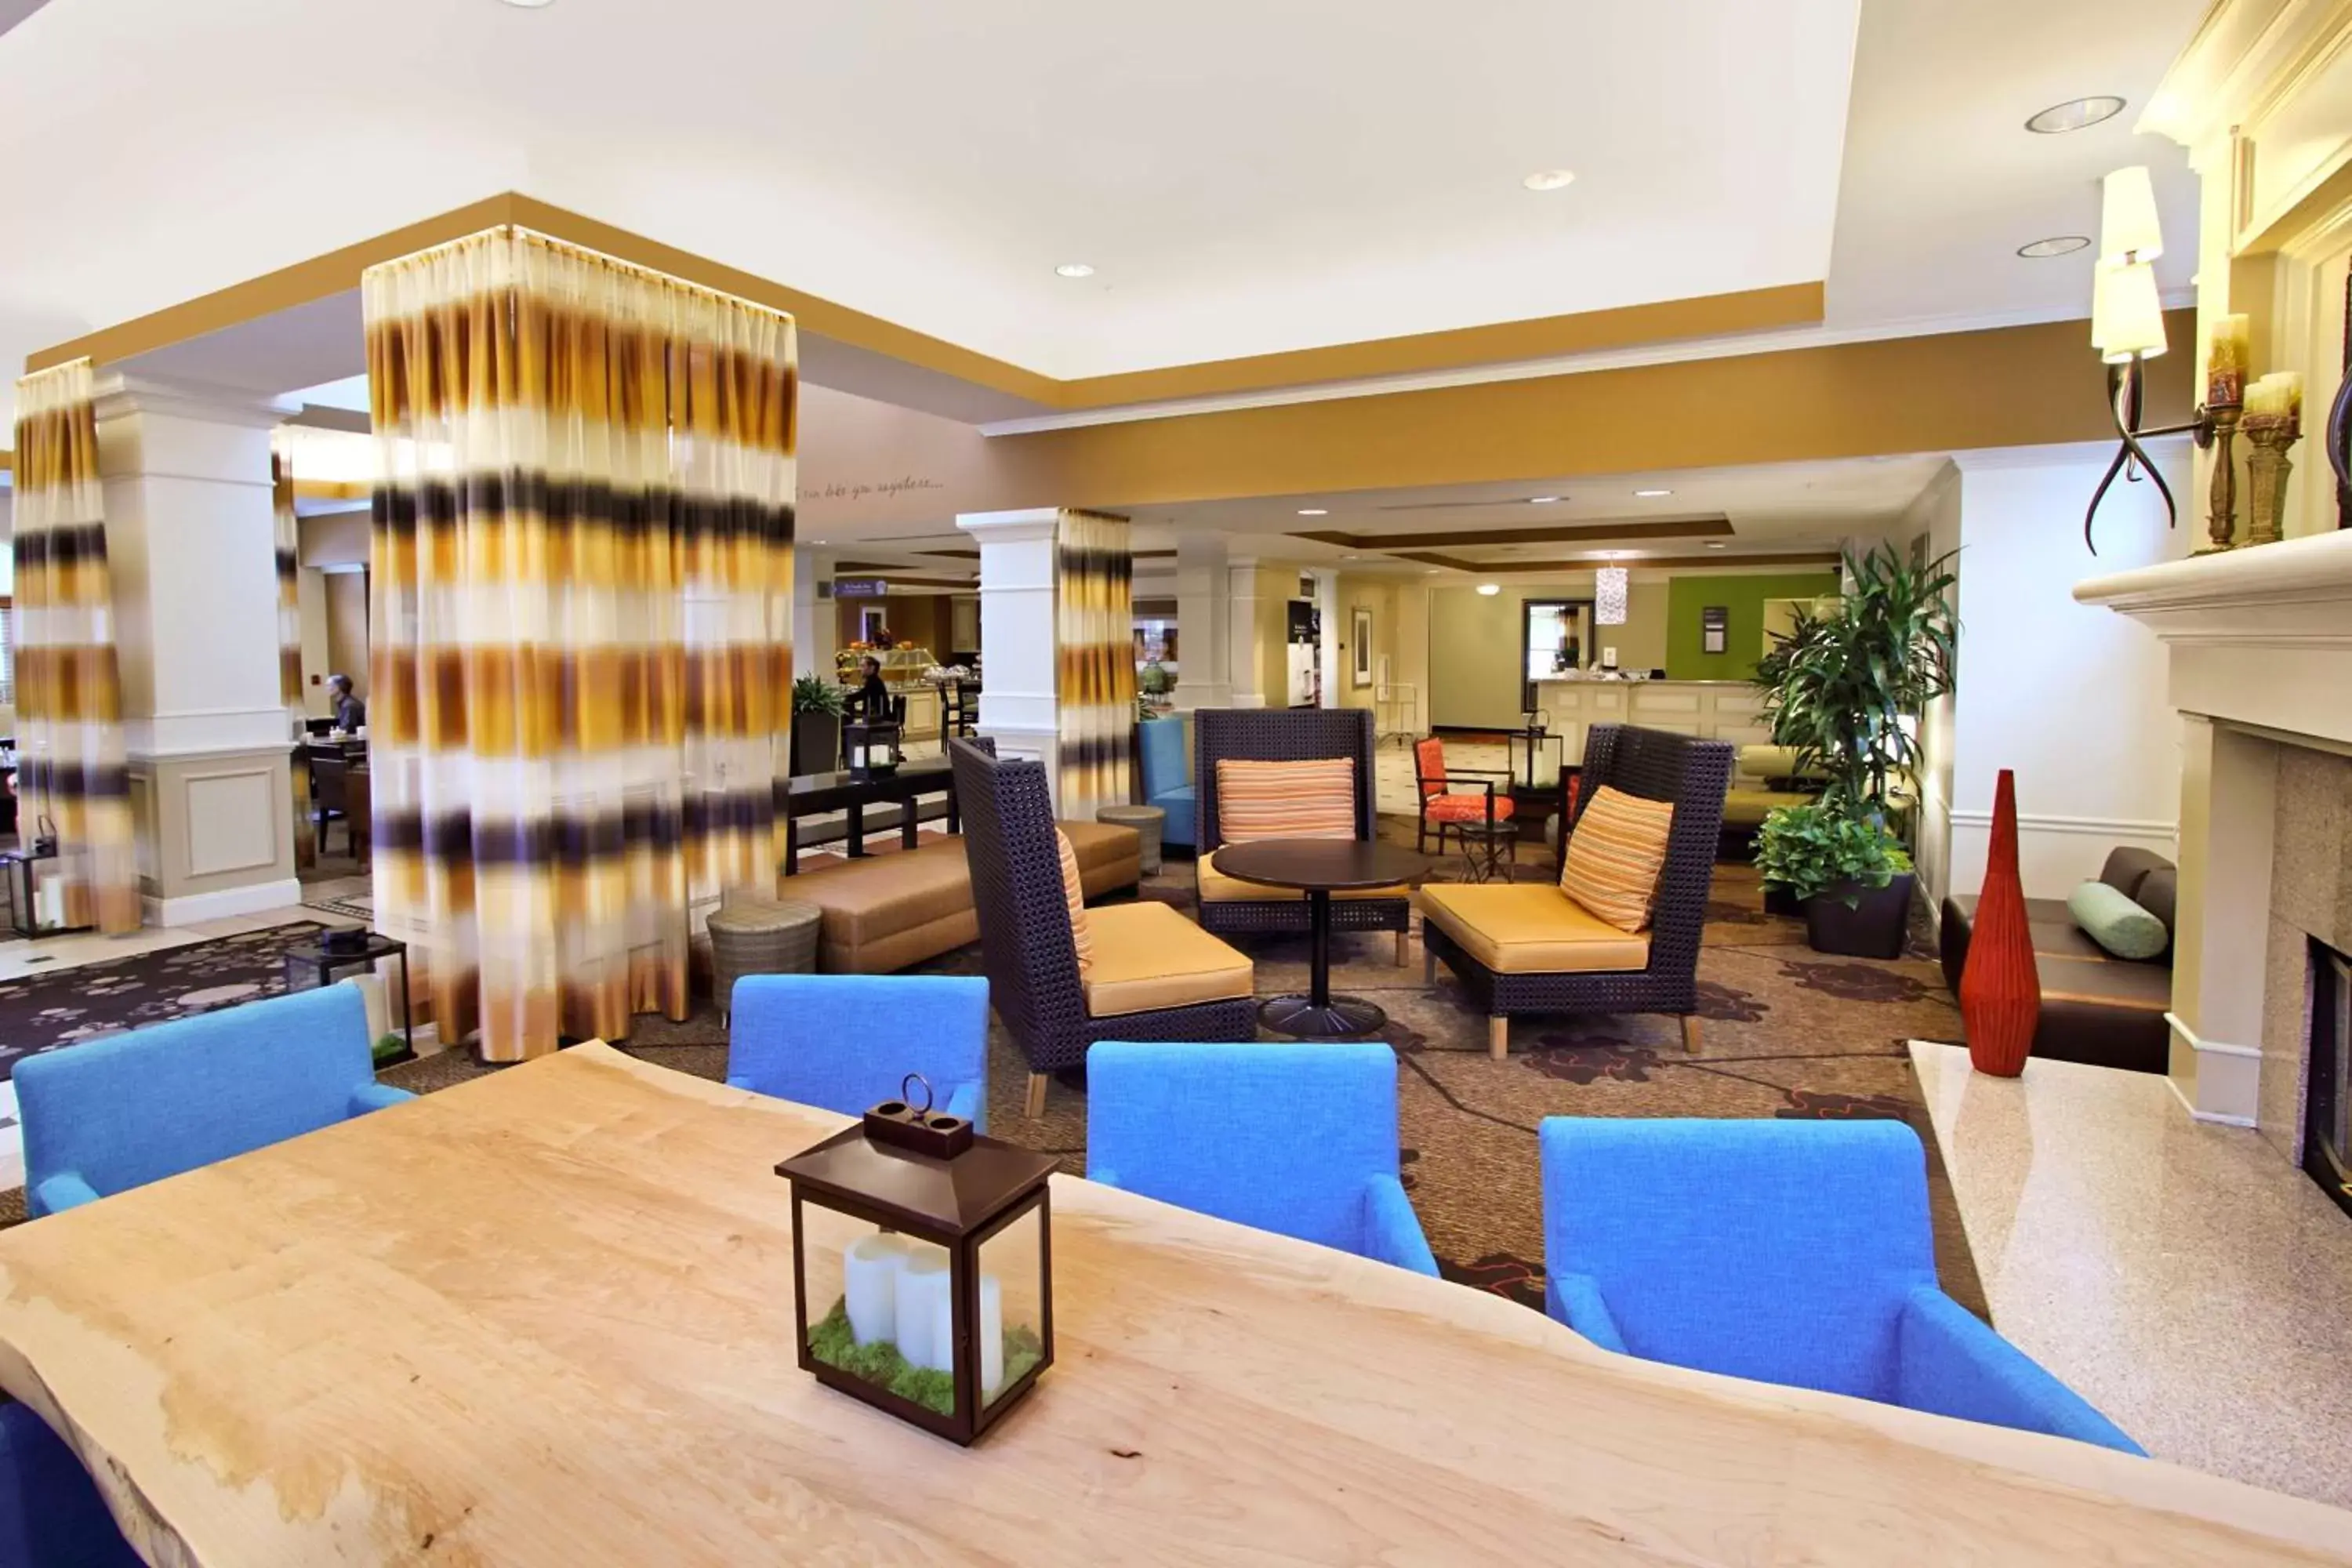 Lobby or reception in Hilton Garden Inn Calabasas